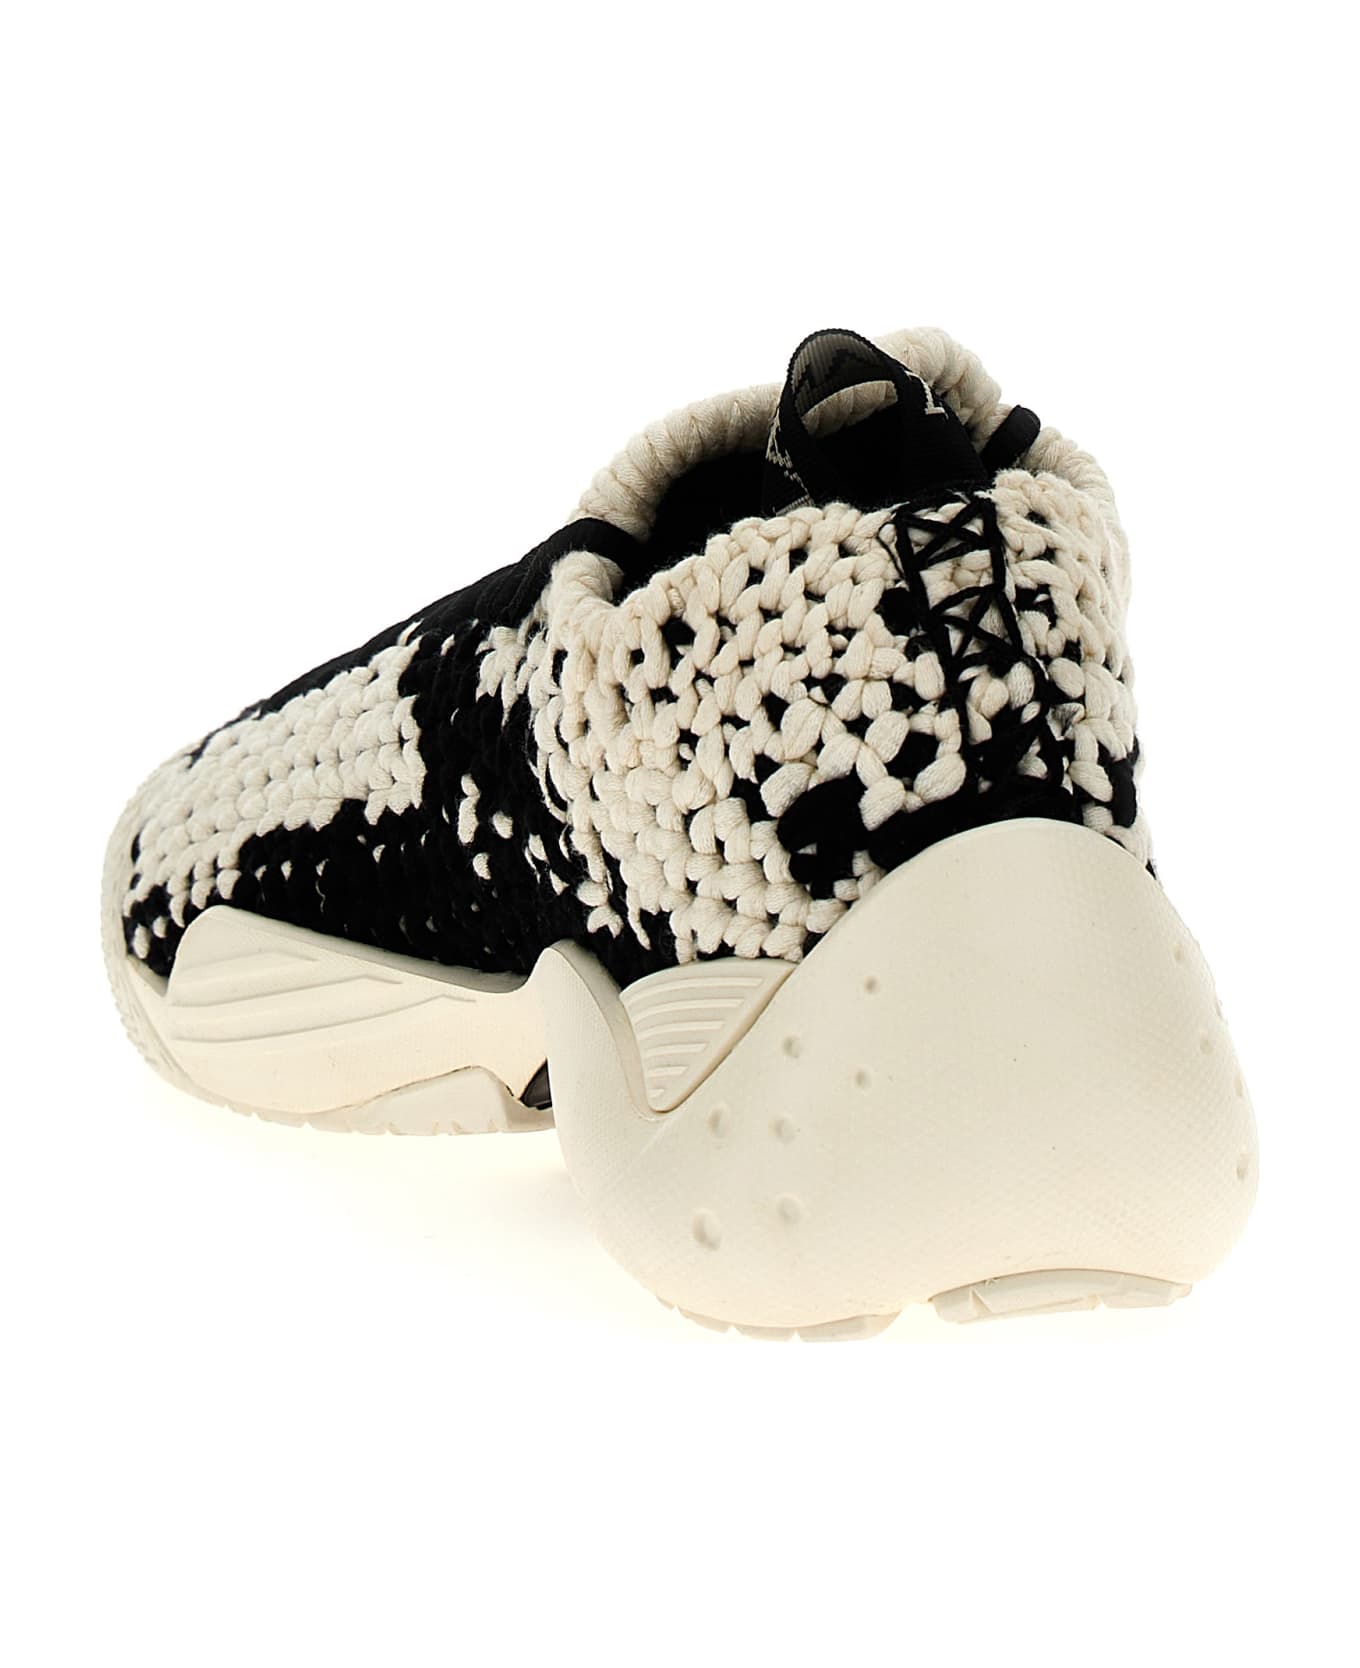 Lanvin 'cotton Flash-knit' Sneakers - White/Black